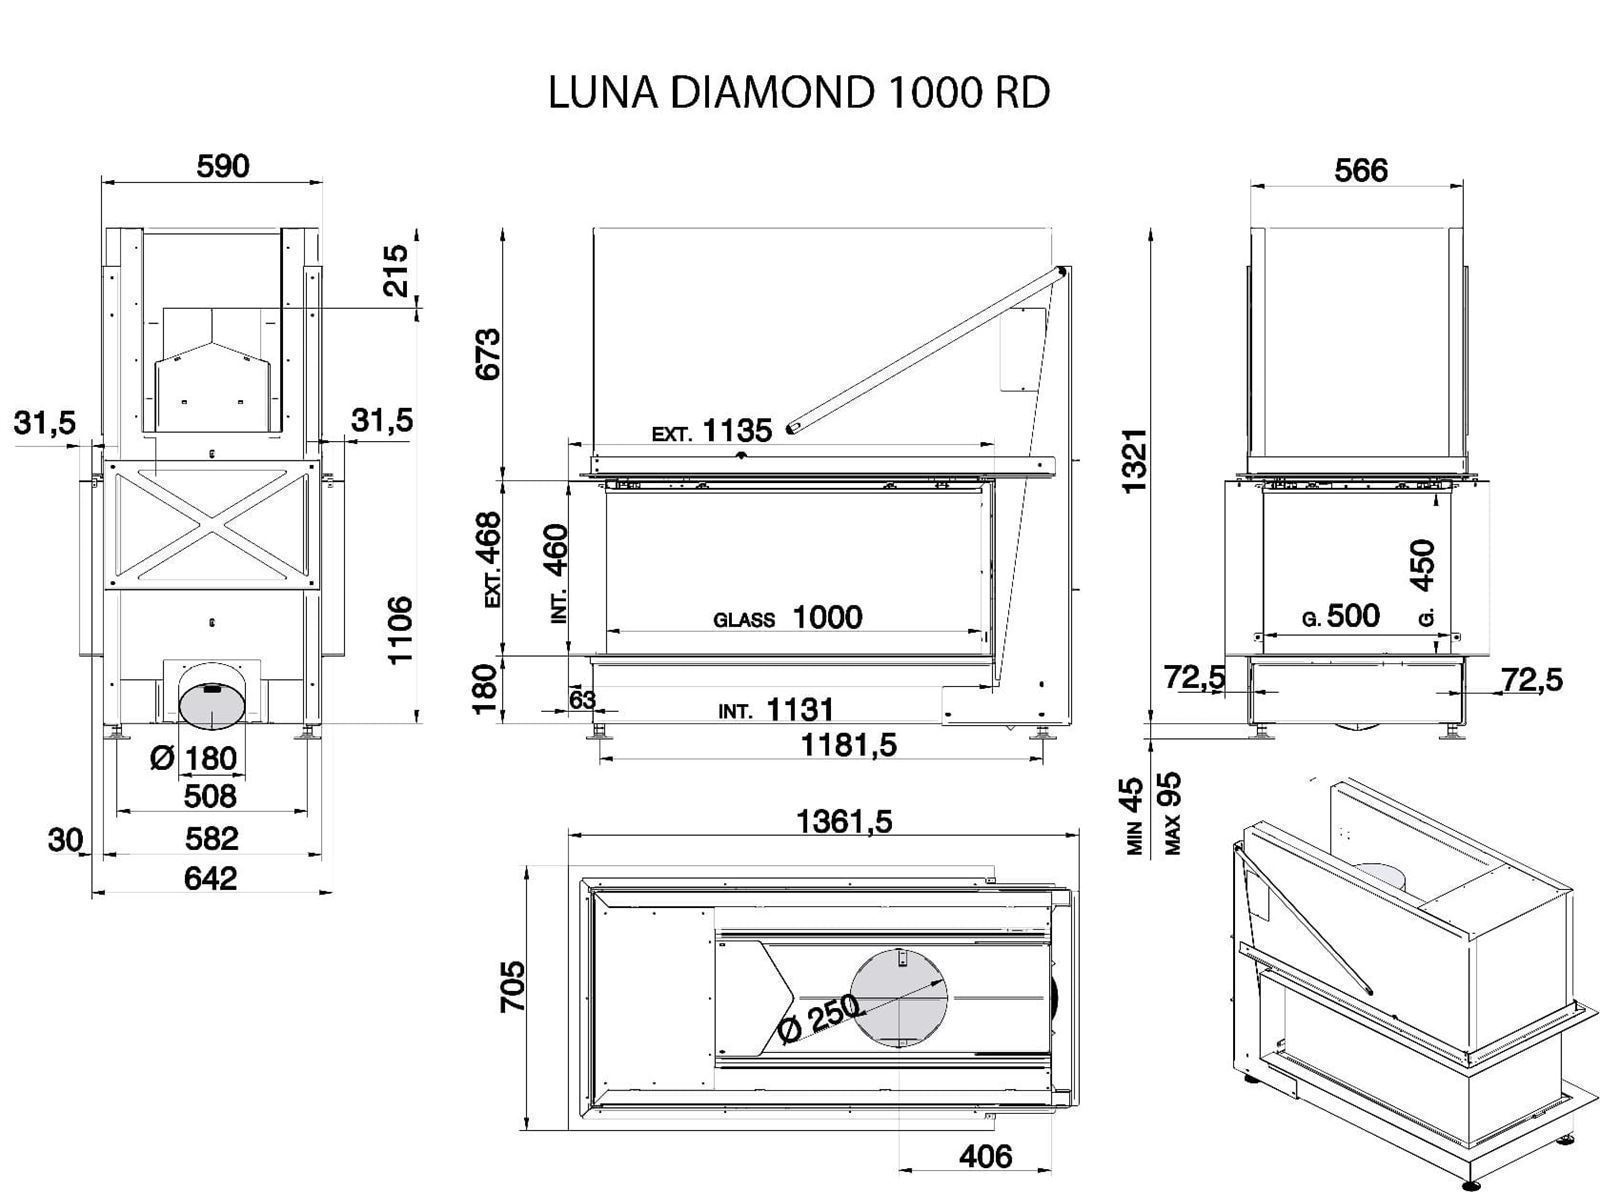 Hogar de leña Luna Diamond 100 RD interior metálico - Imagen 2